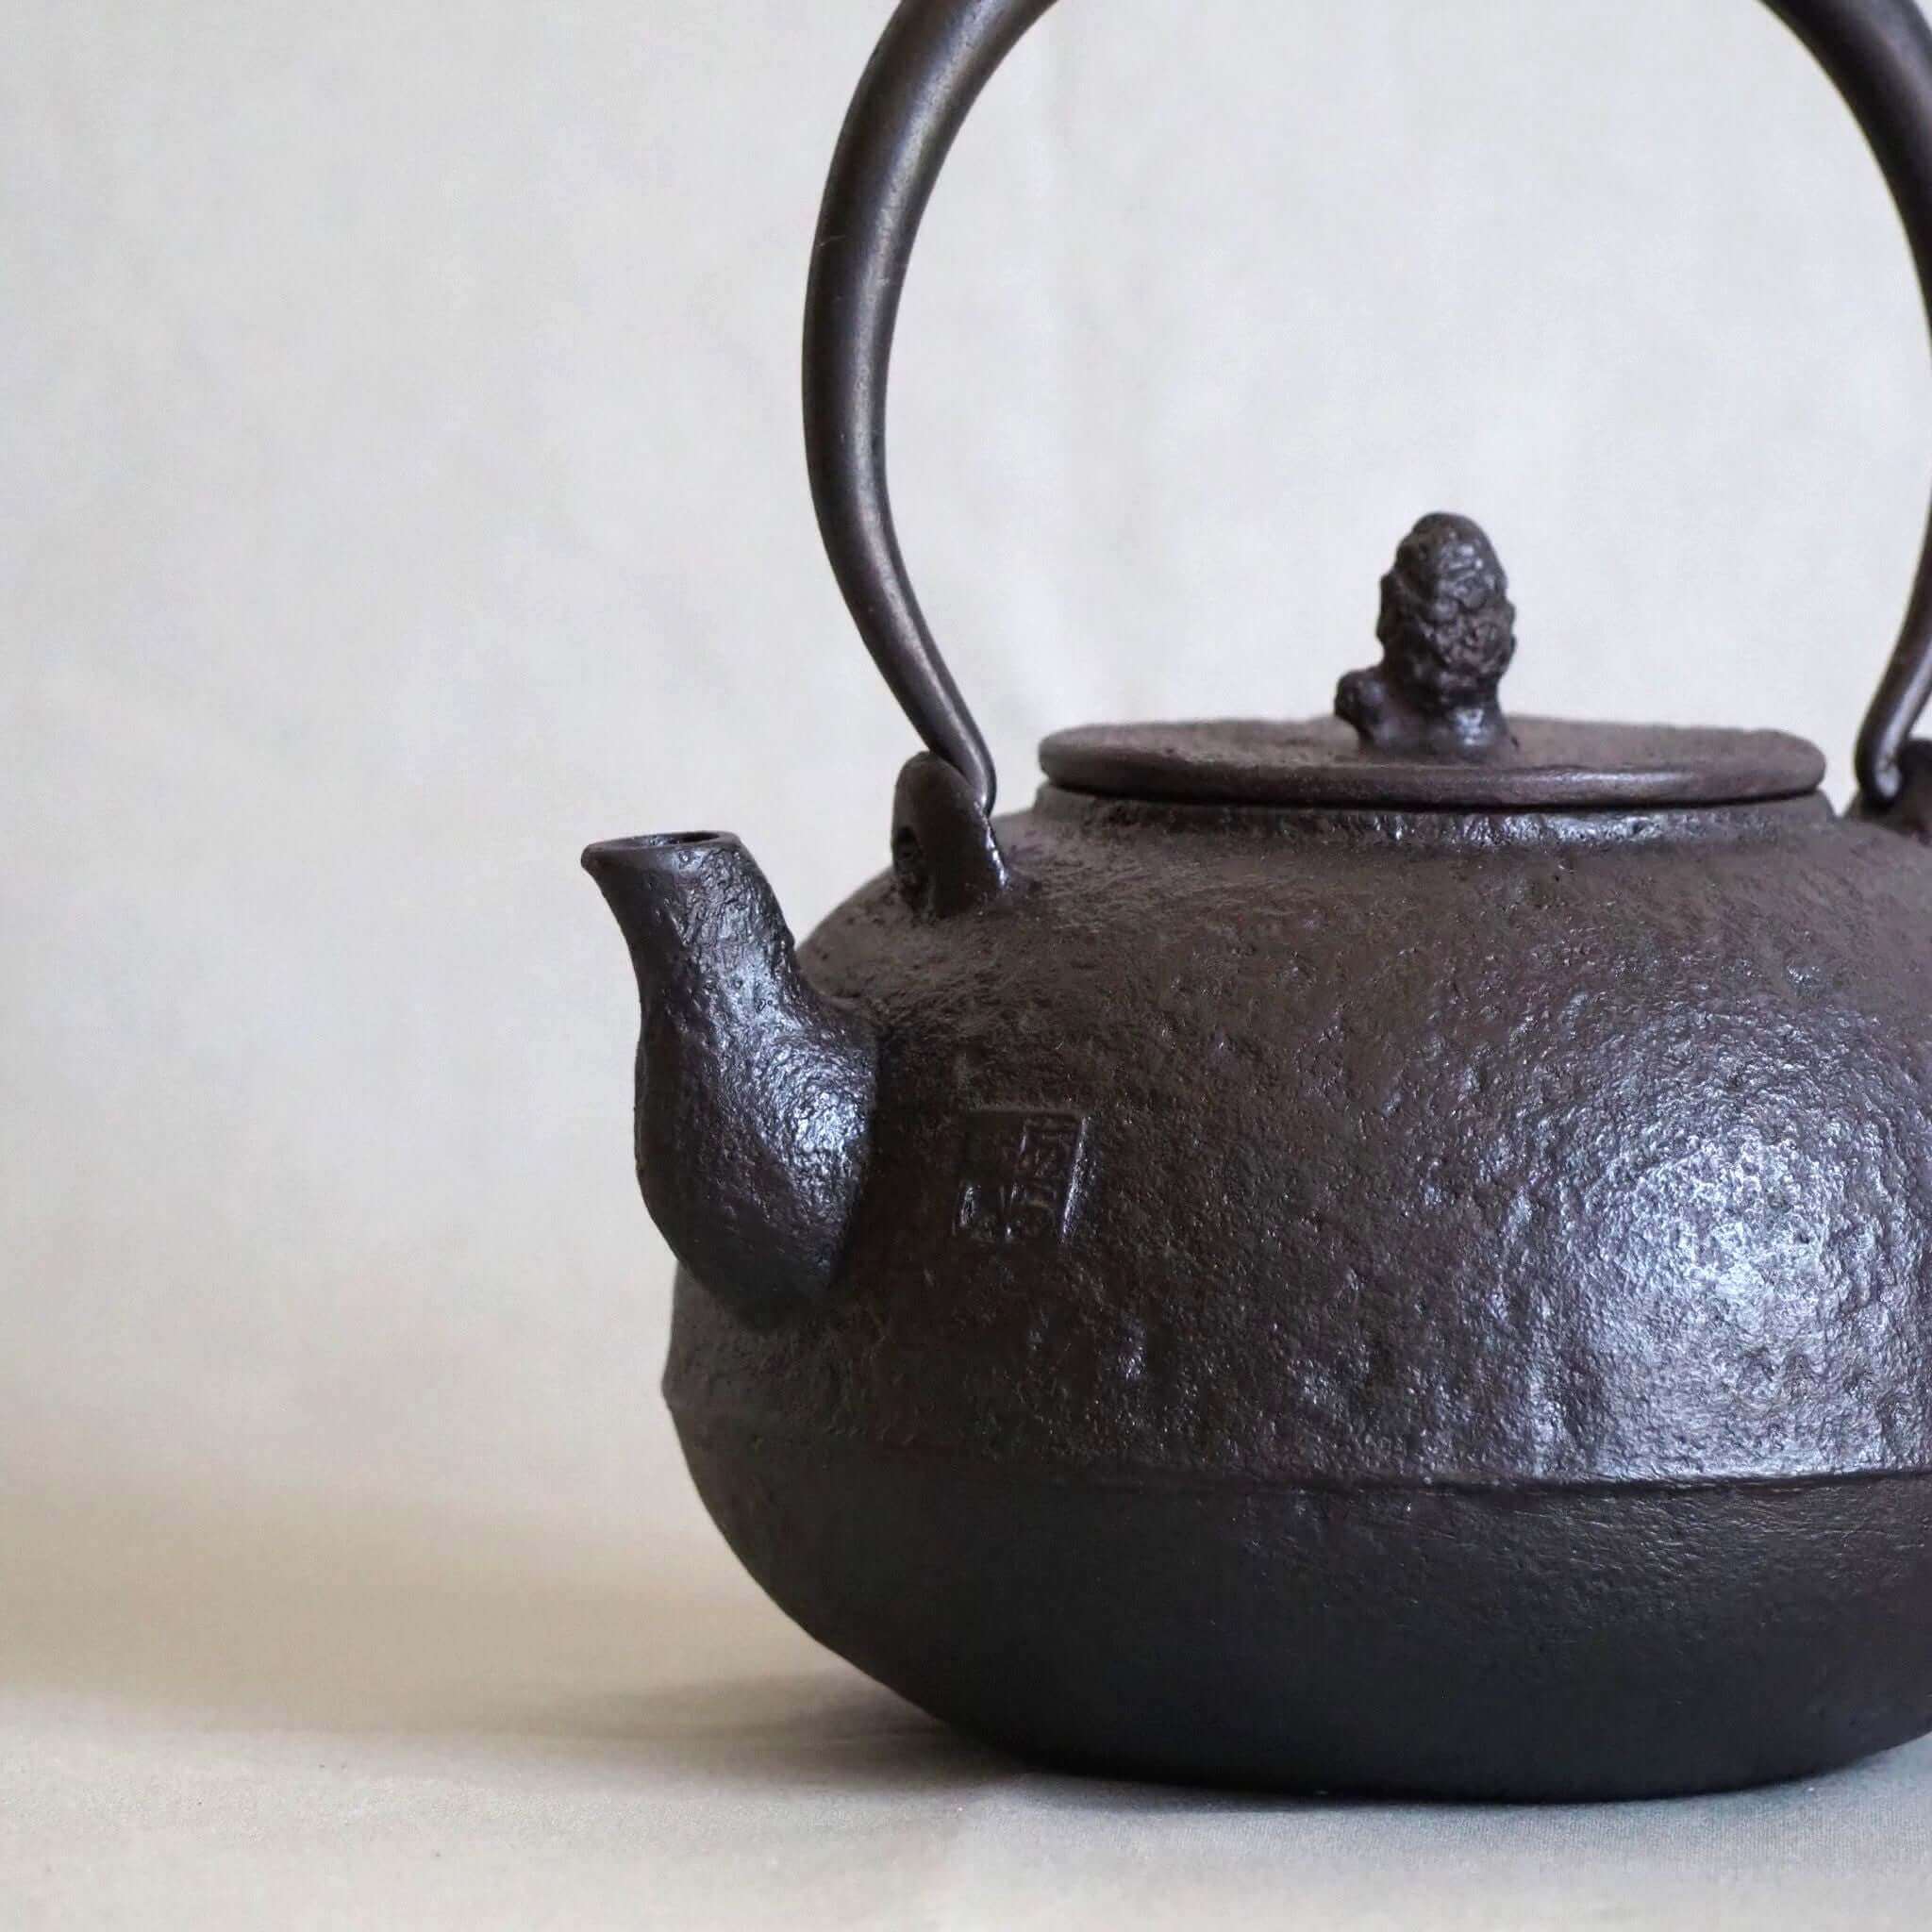 山形鋳物 尻張 鉄瓶 あらい工房 日本茶や白湯におすすめ 暮らしの道具 